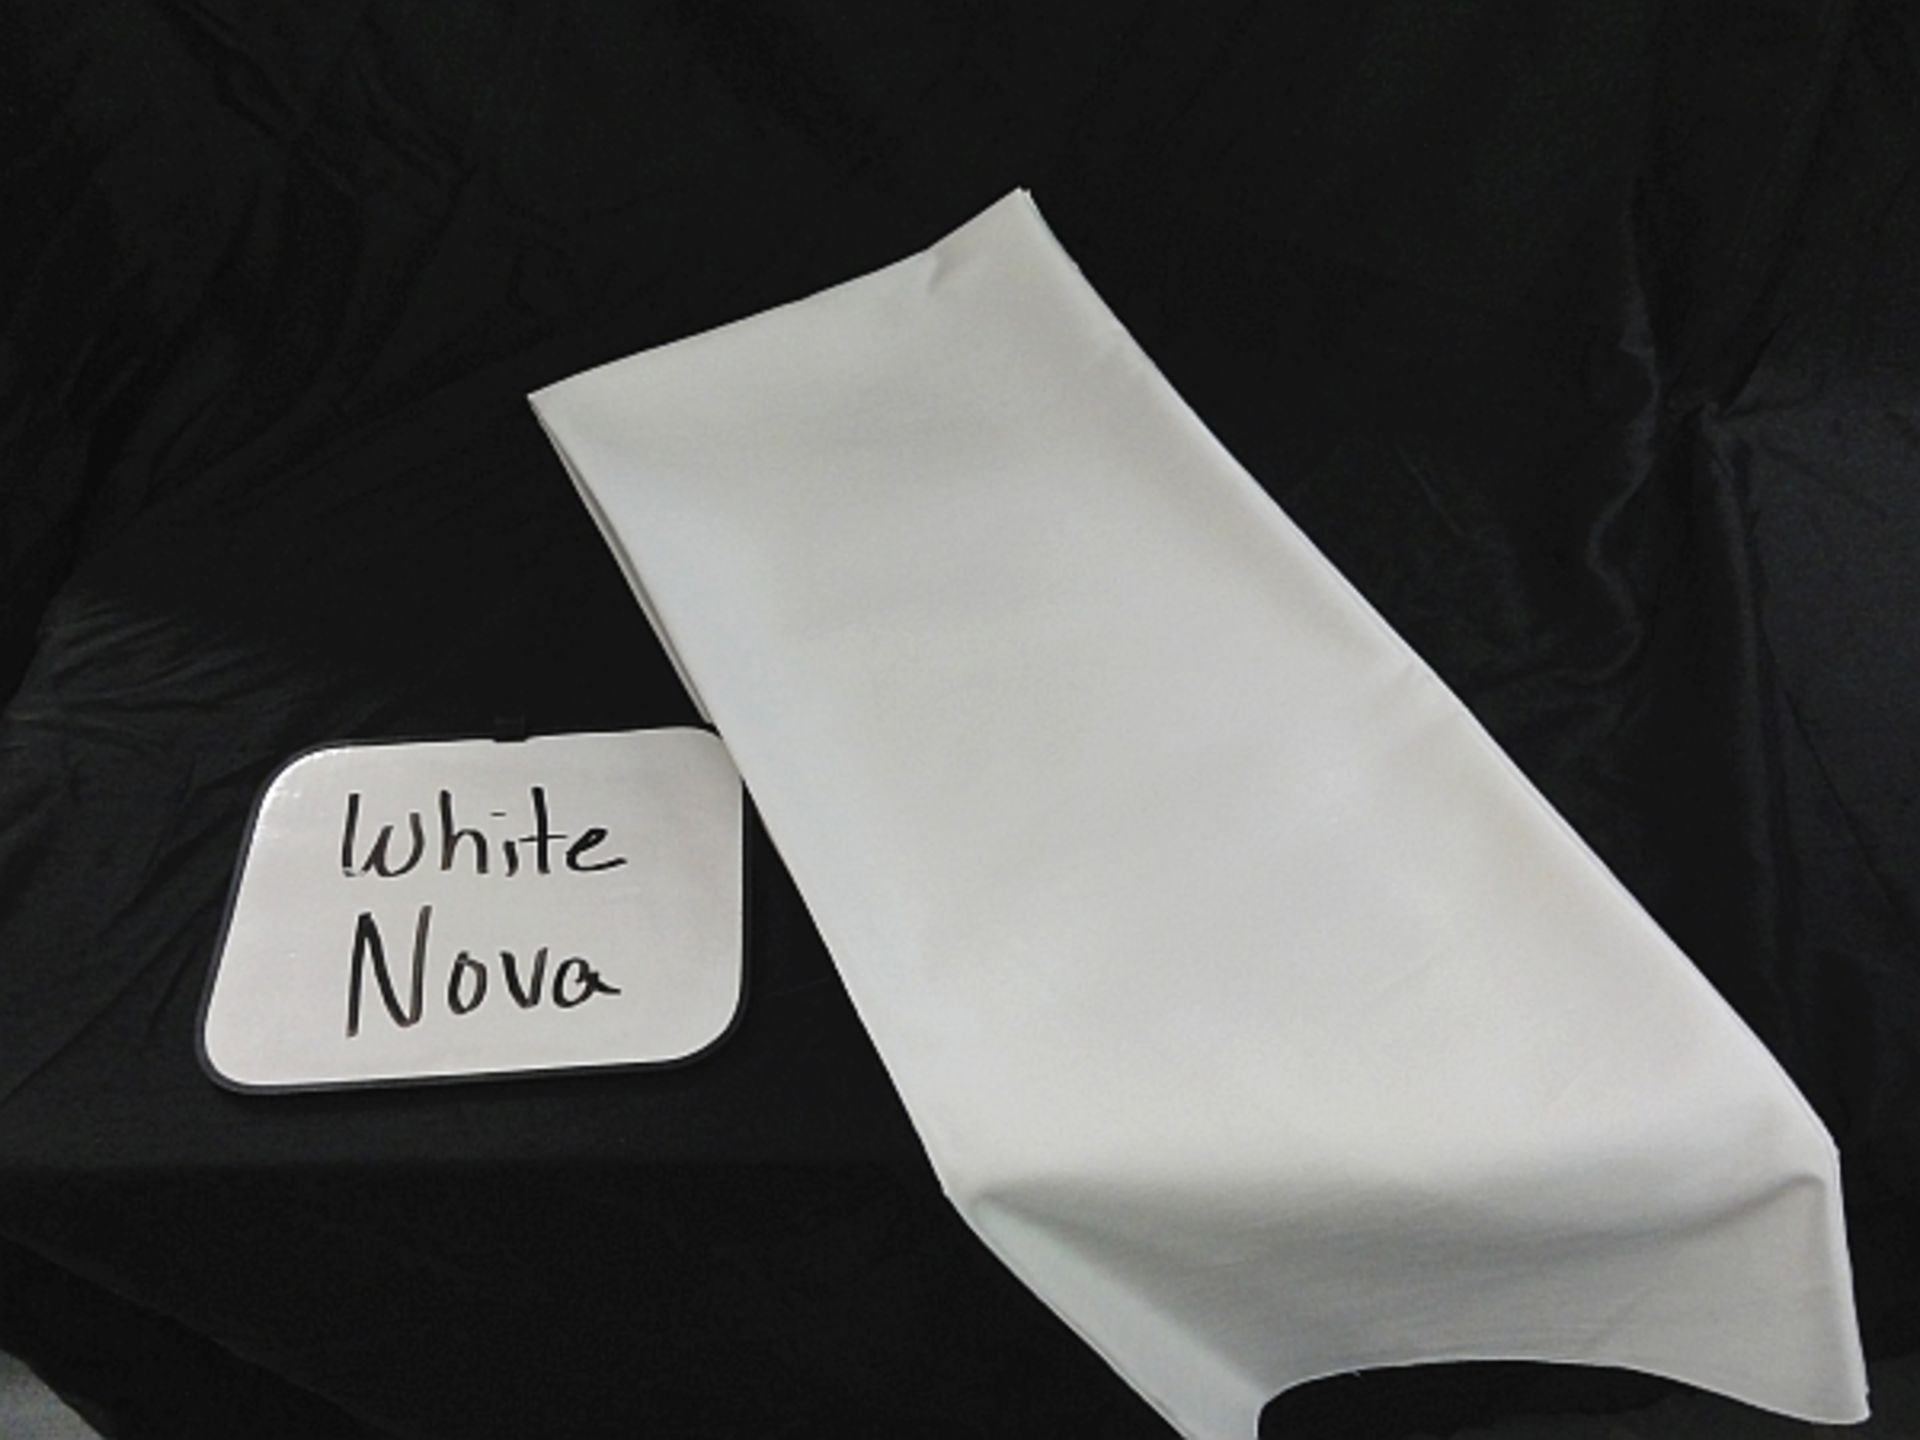 WHITE NOVA, 120" ROUND